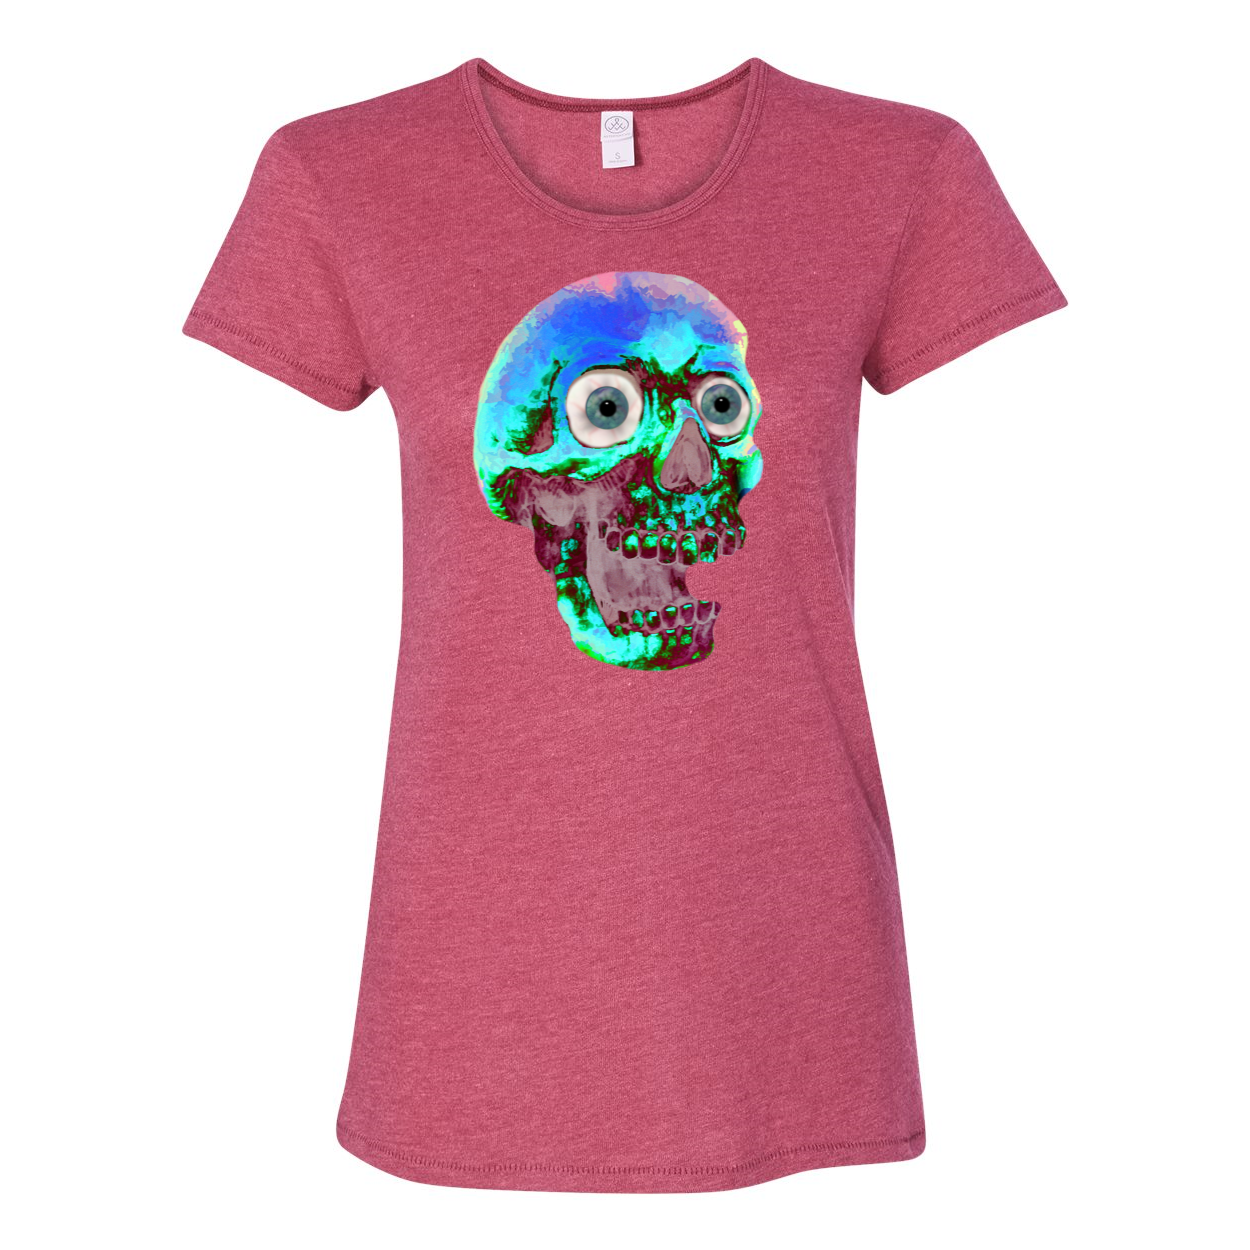 Screaming Skull T-Shirt - Chloe Lambertin